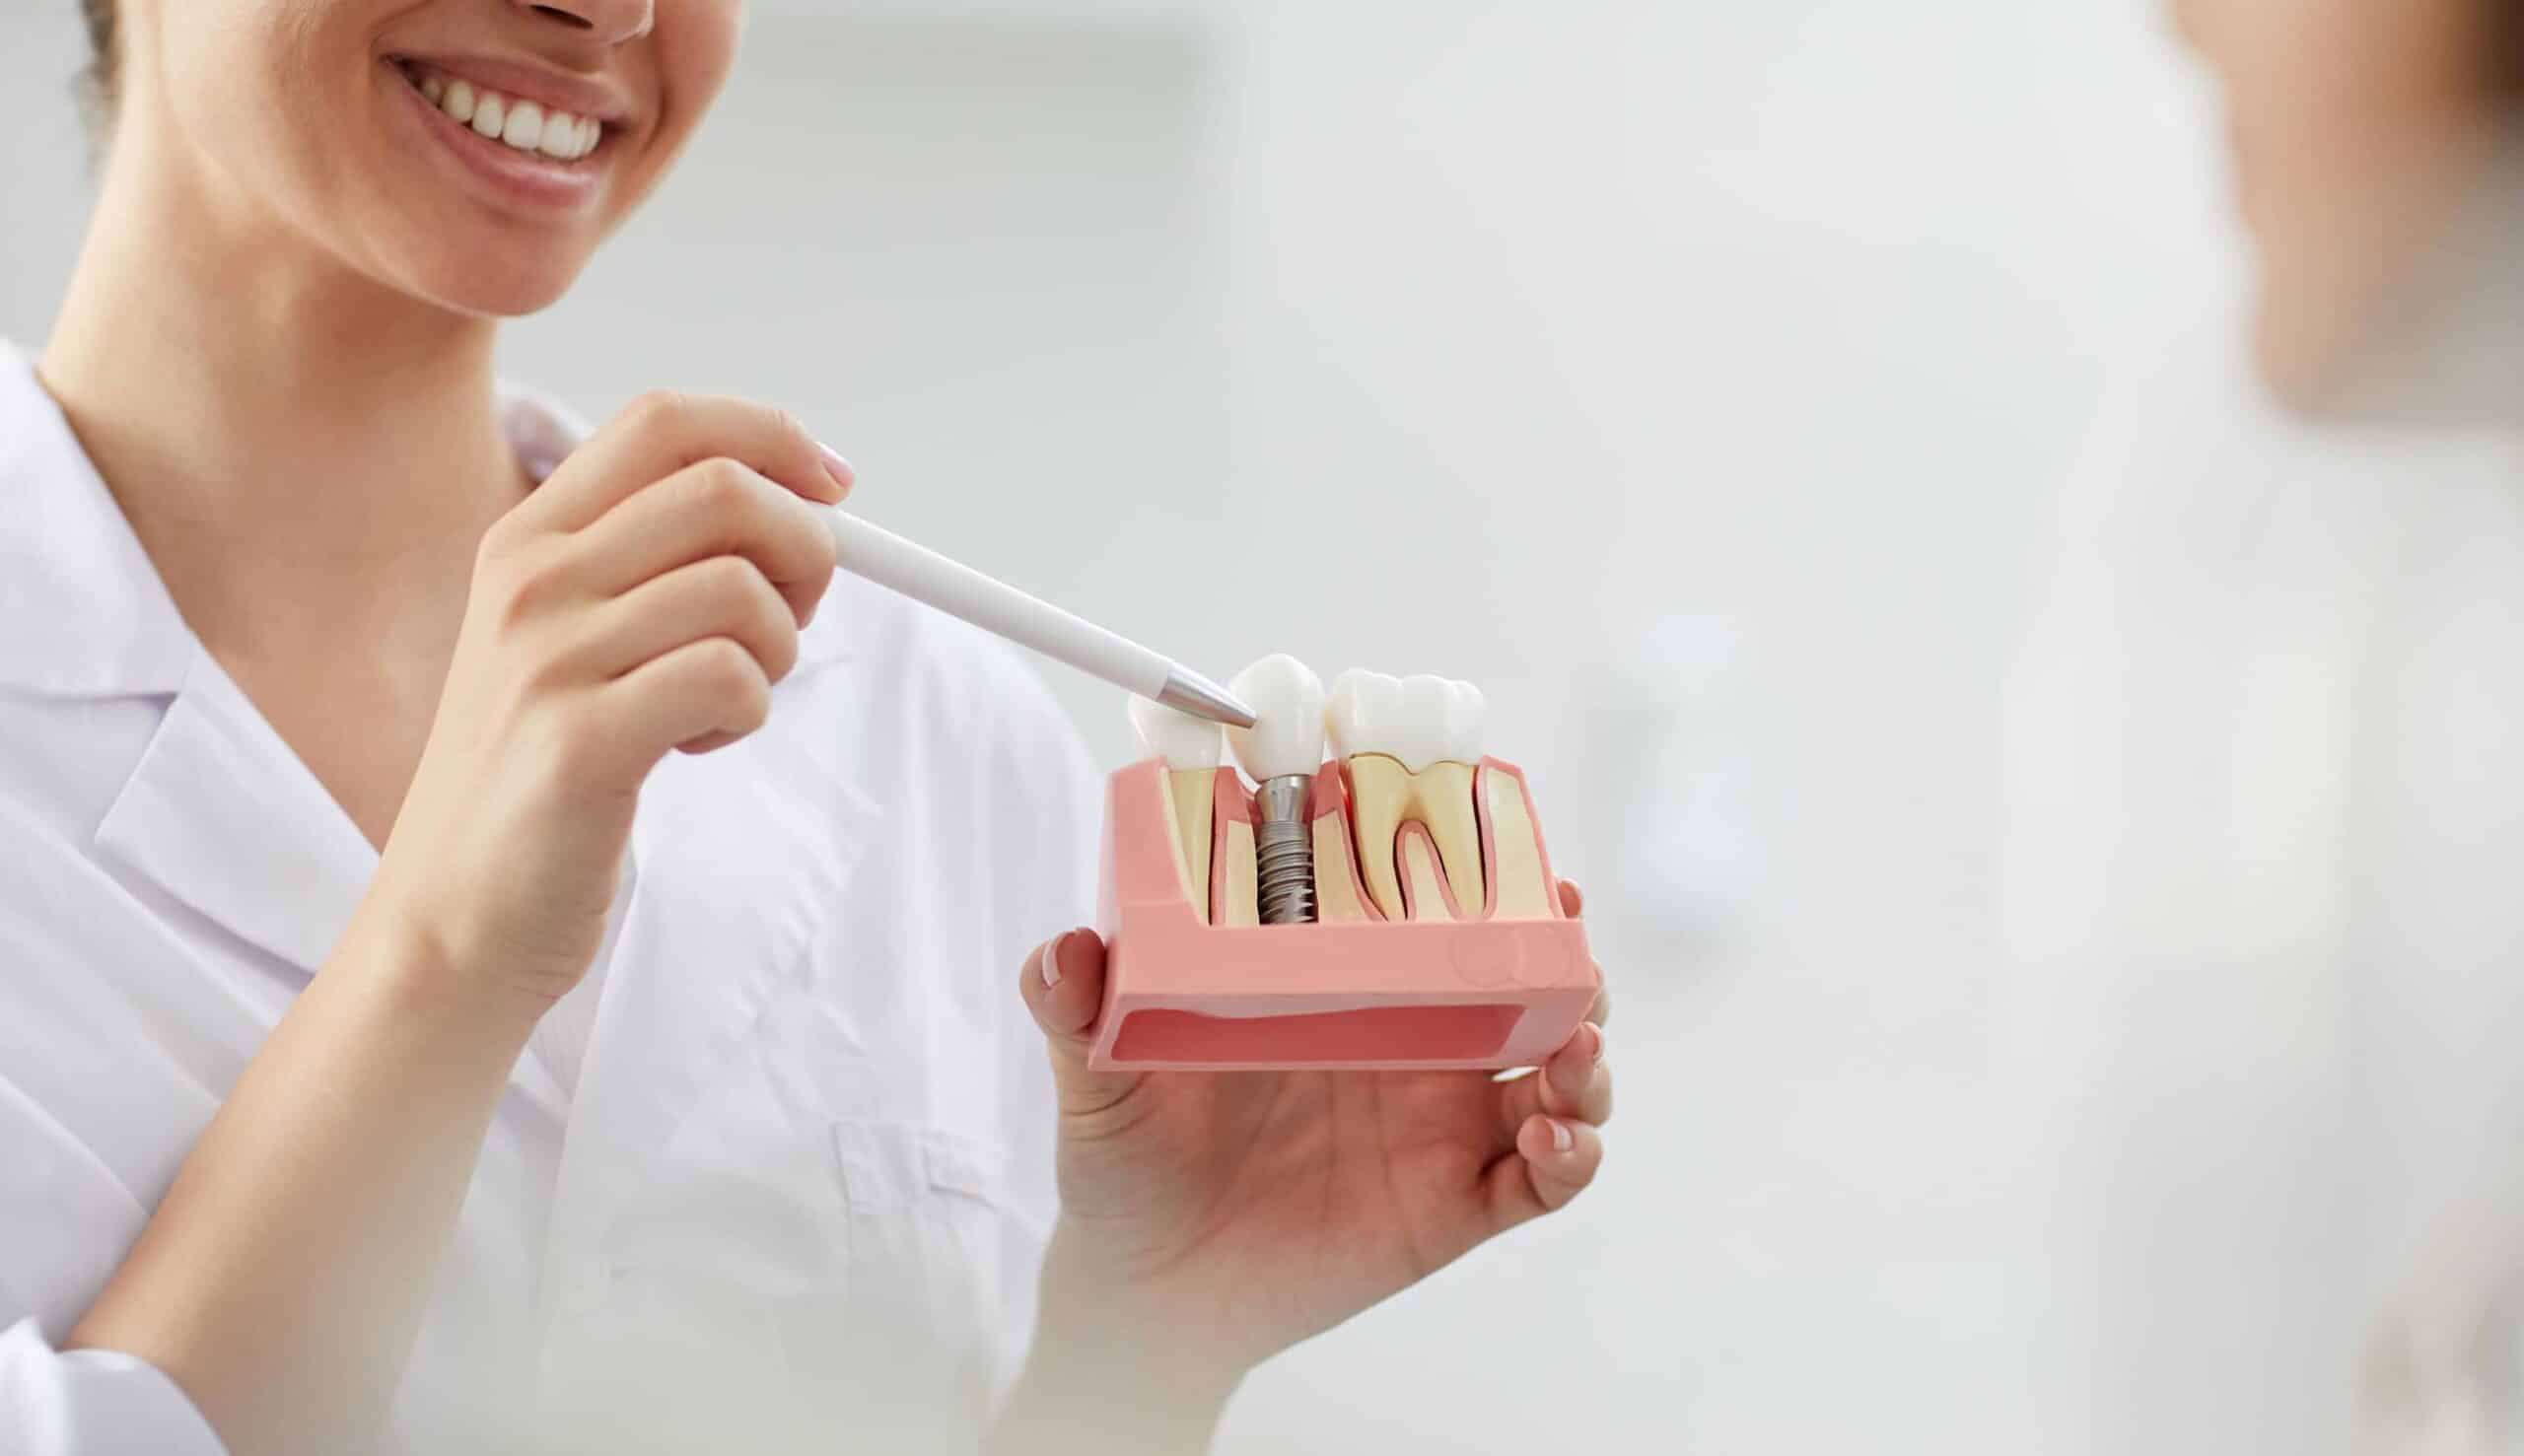 Quelle alimentation après la pose d'un implant dentaire ? | Clinique dentaire Sana Oris | Paris 8